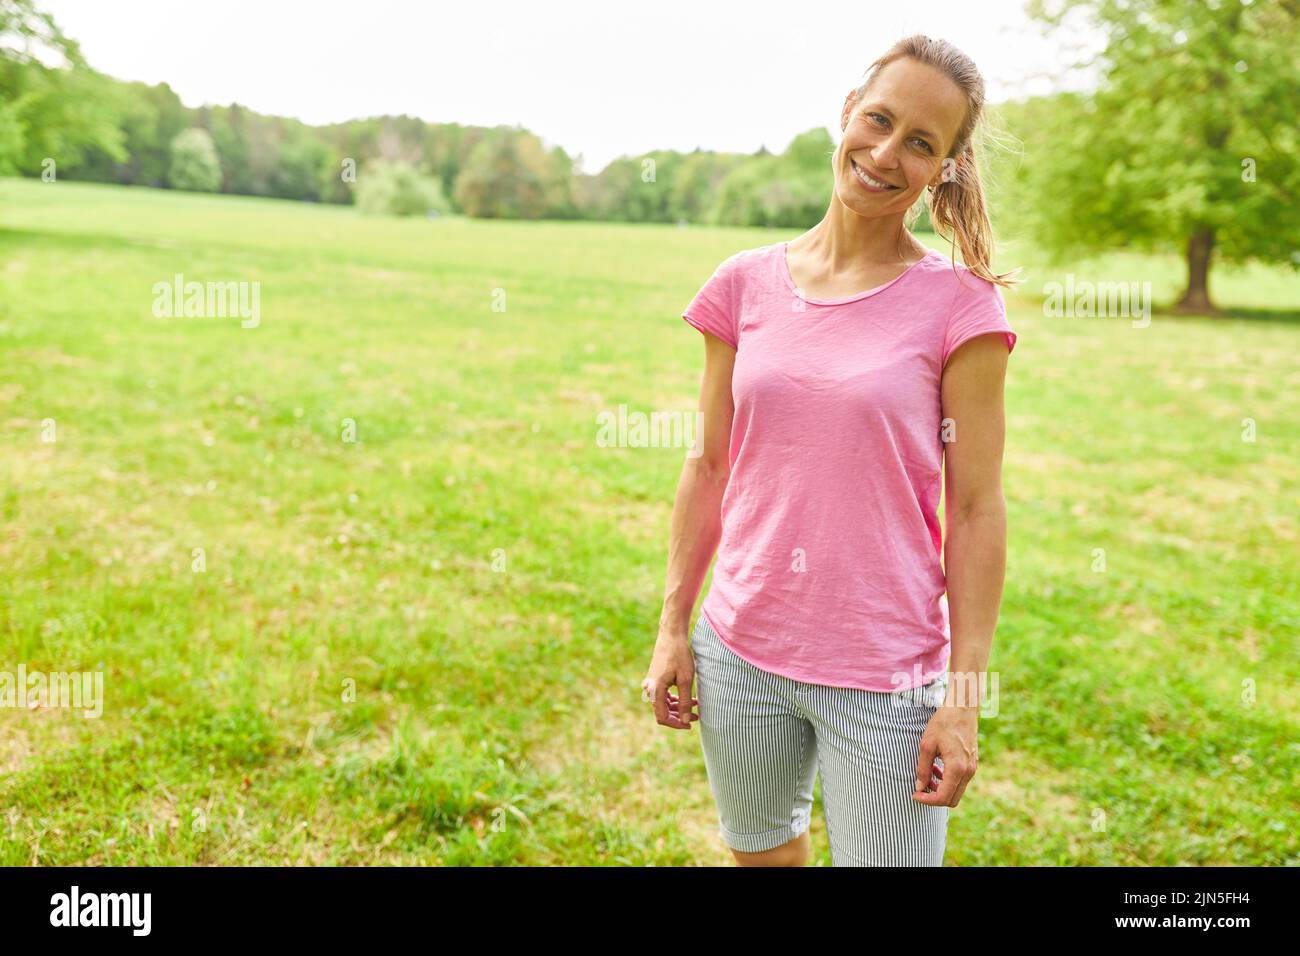 Mujer joven deportiva en vestido deportivo en un prado en verano Foto de stock